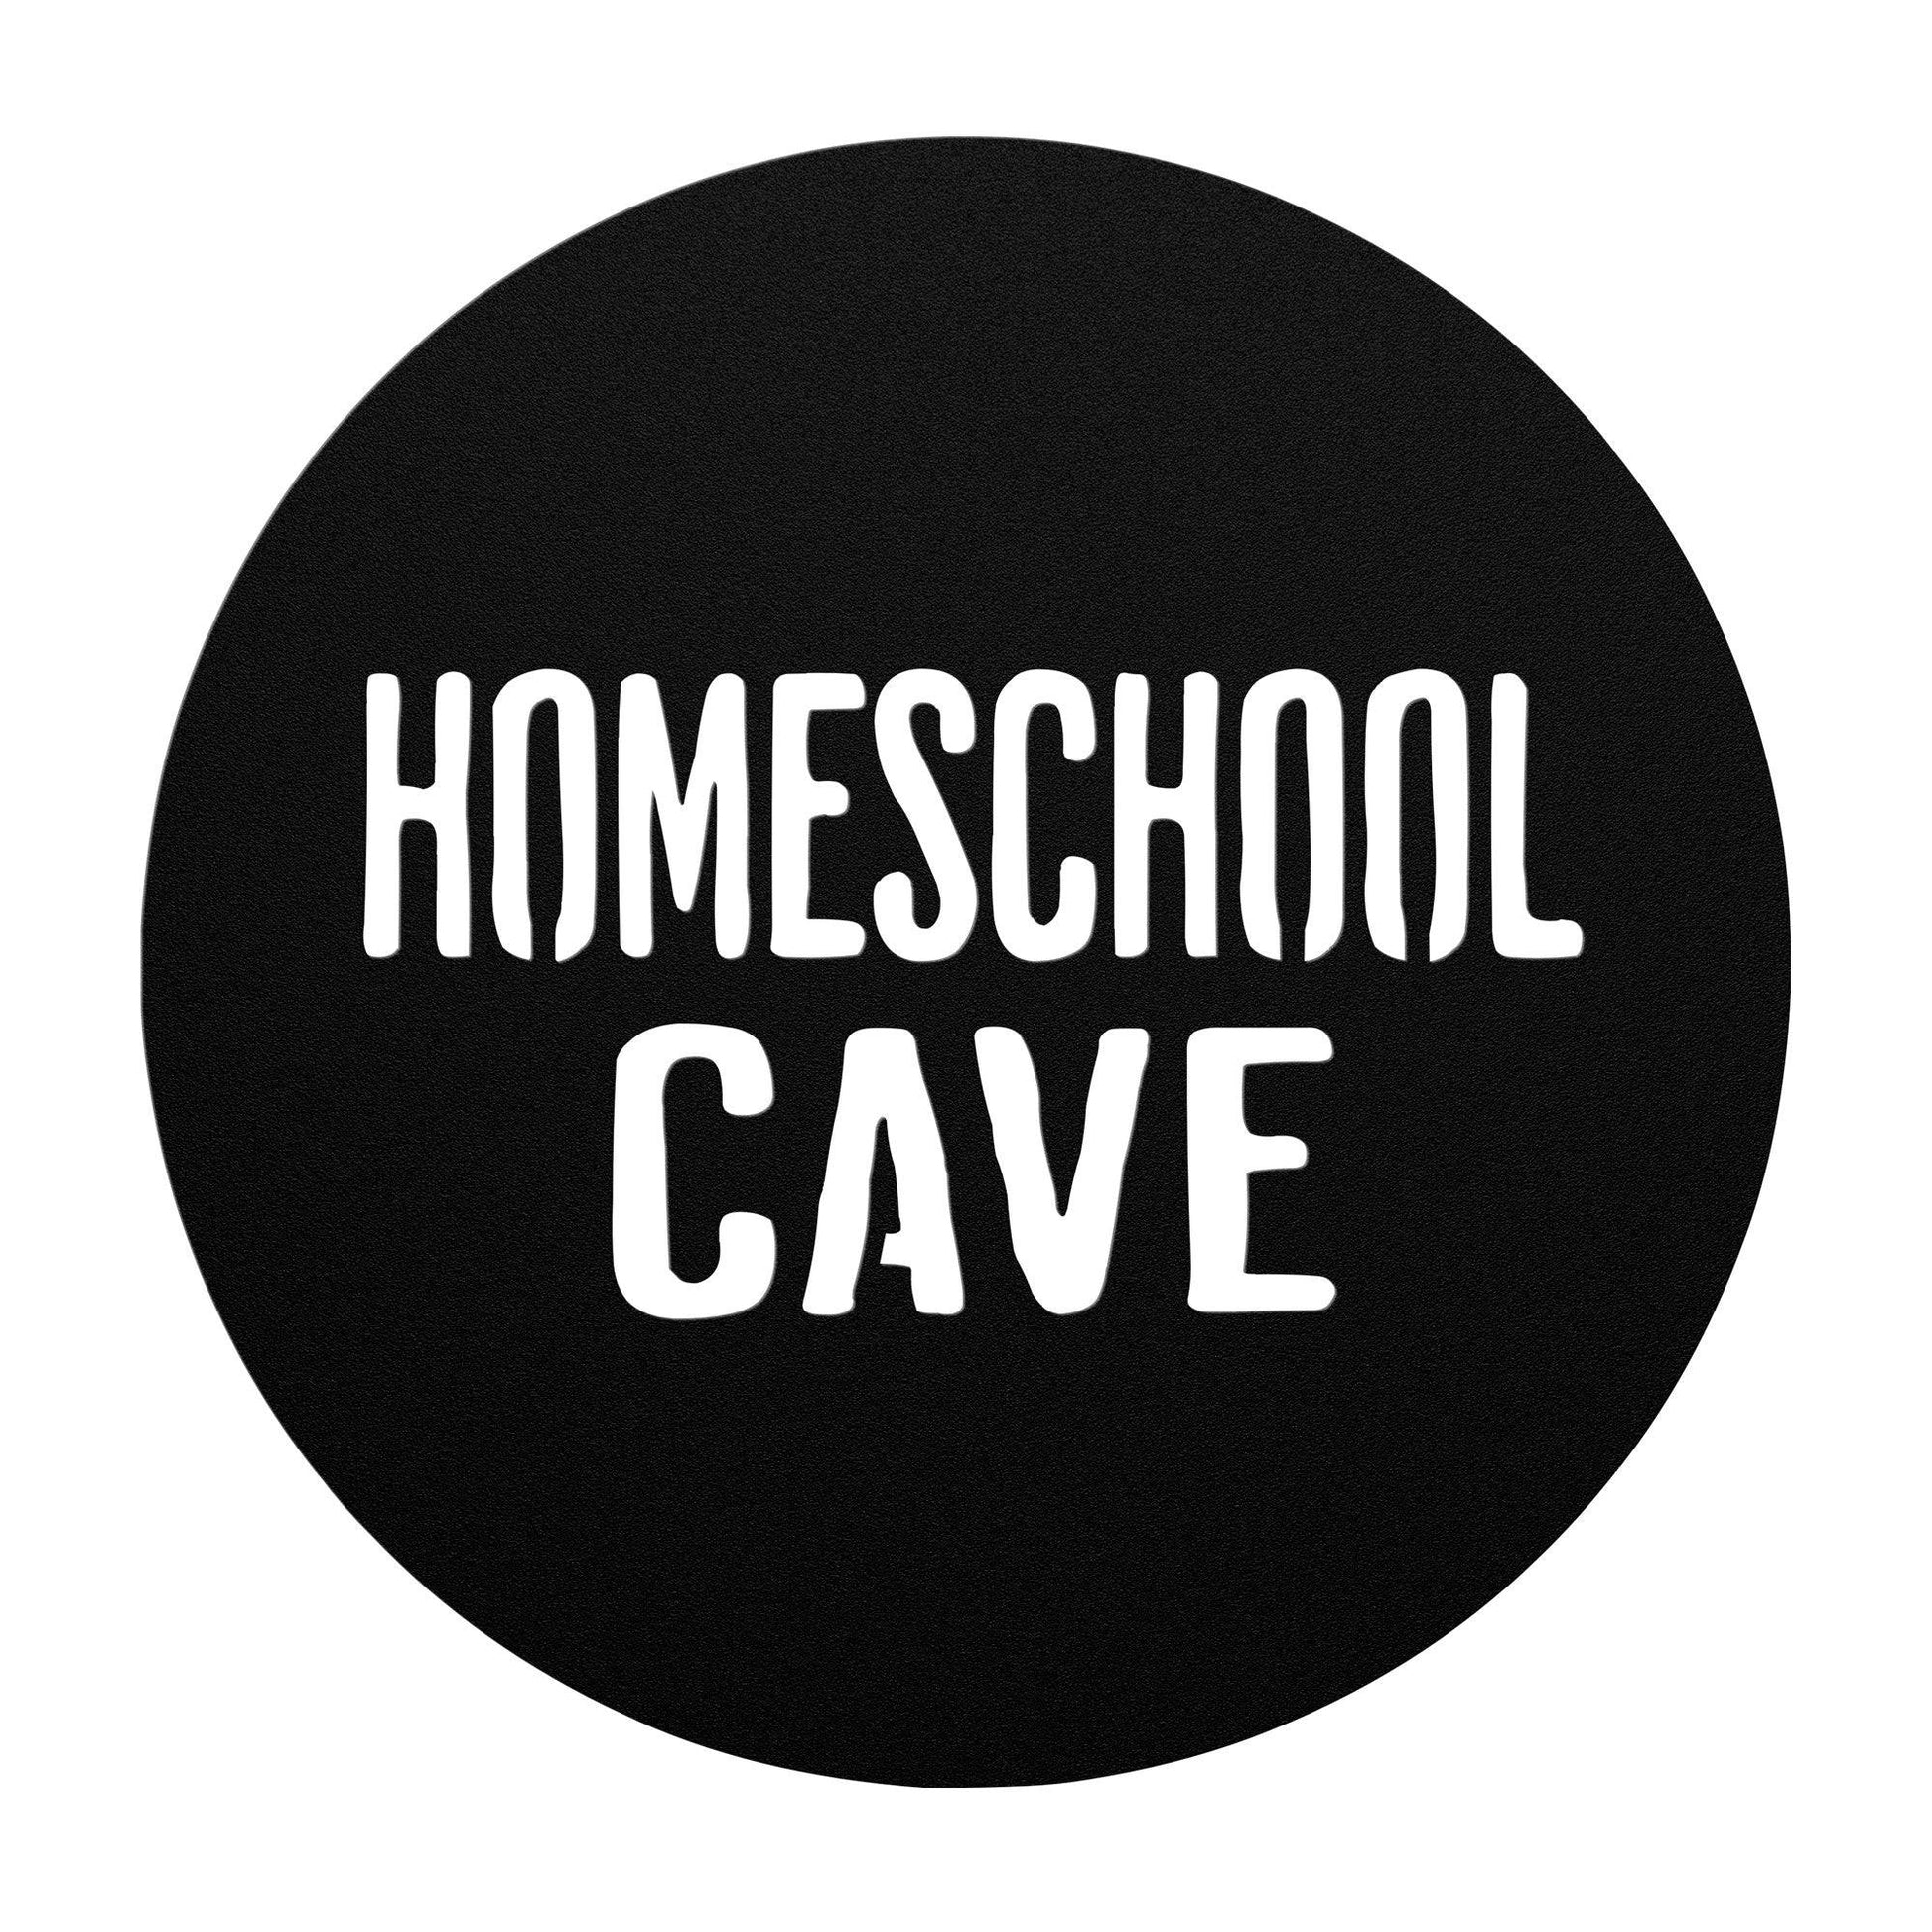 homeschool cave metal decor sign